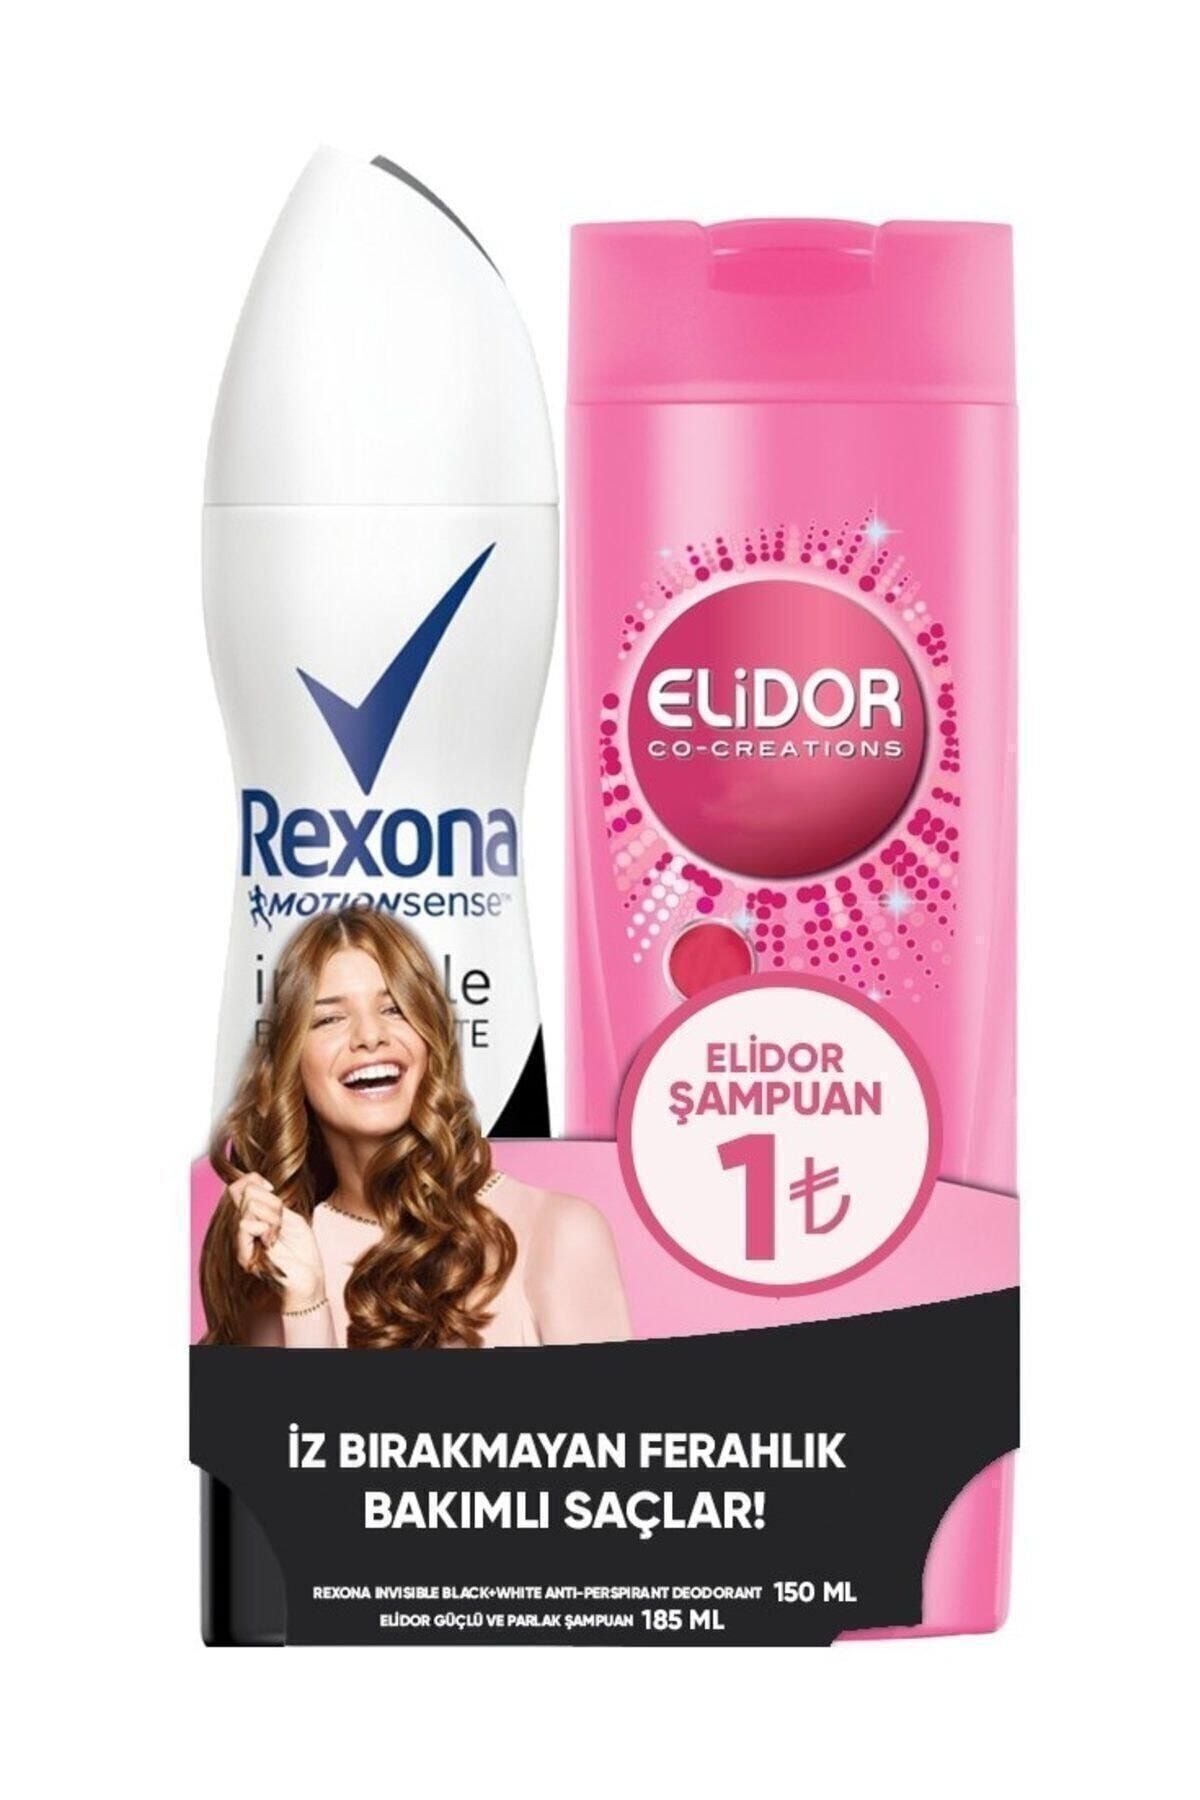 Rexona Invisible Black Deodorant 150 ml +Elidor Güçlü ve Parlak 185 ml 12X335ML